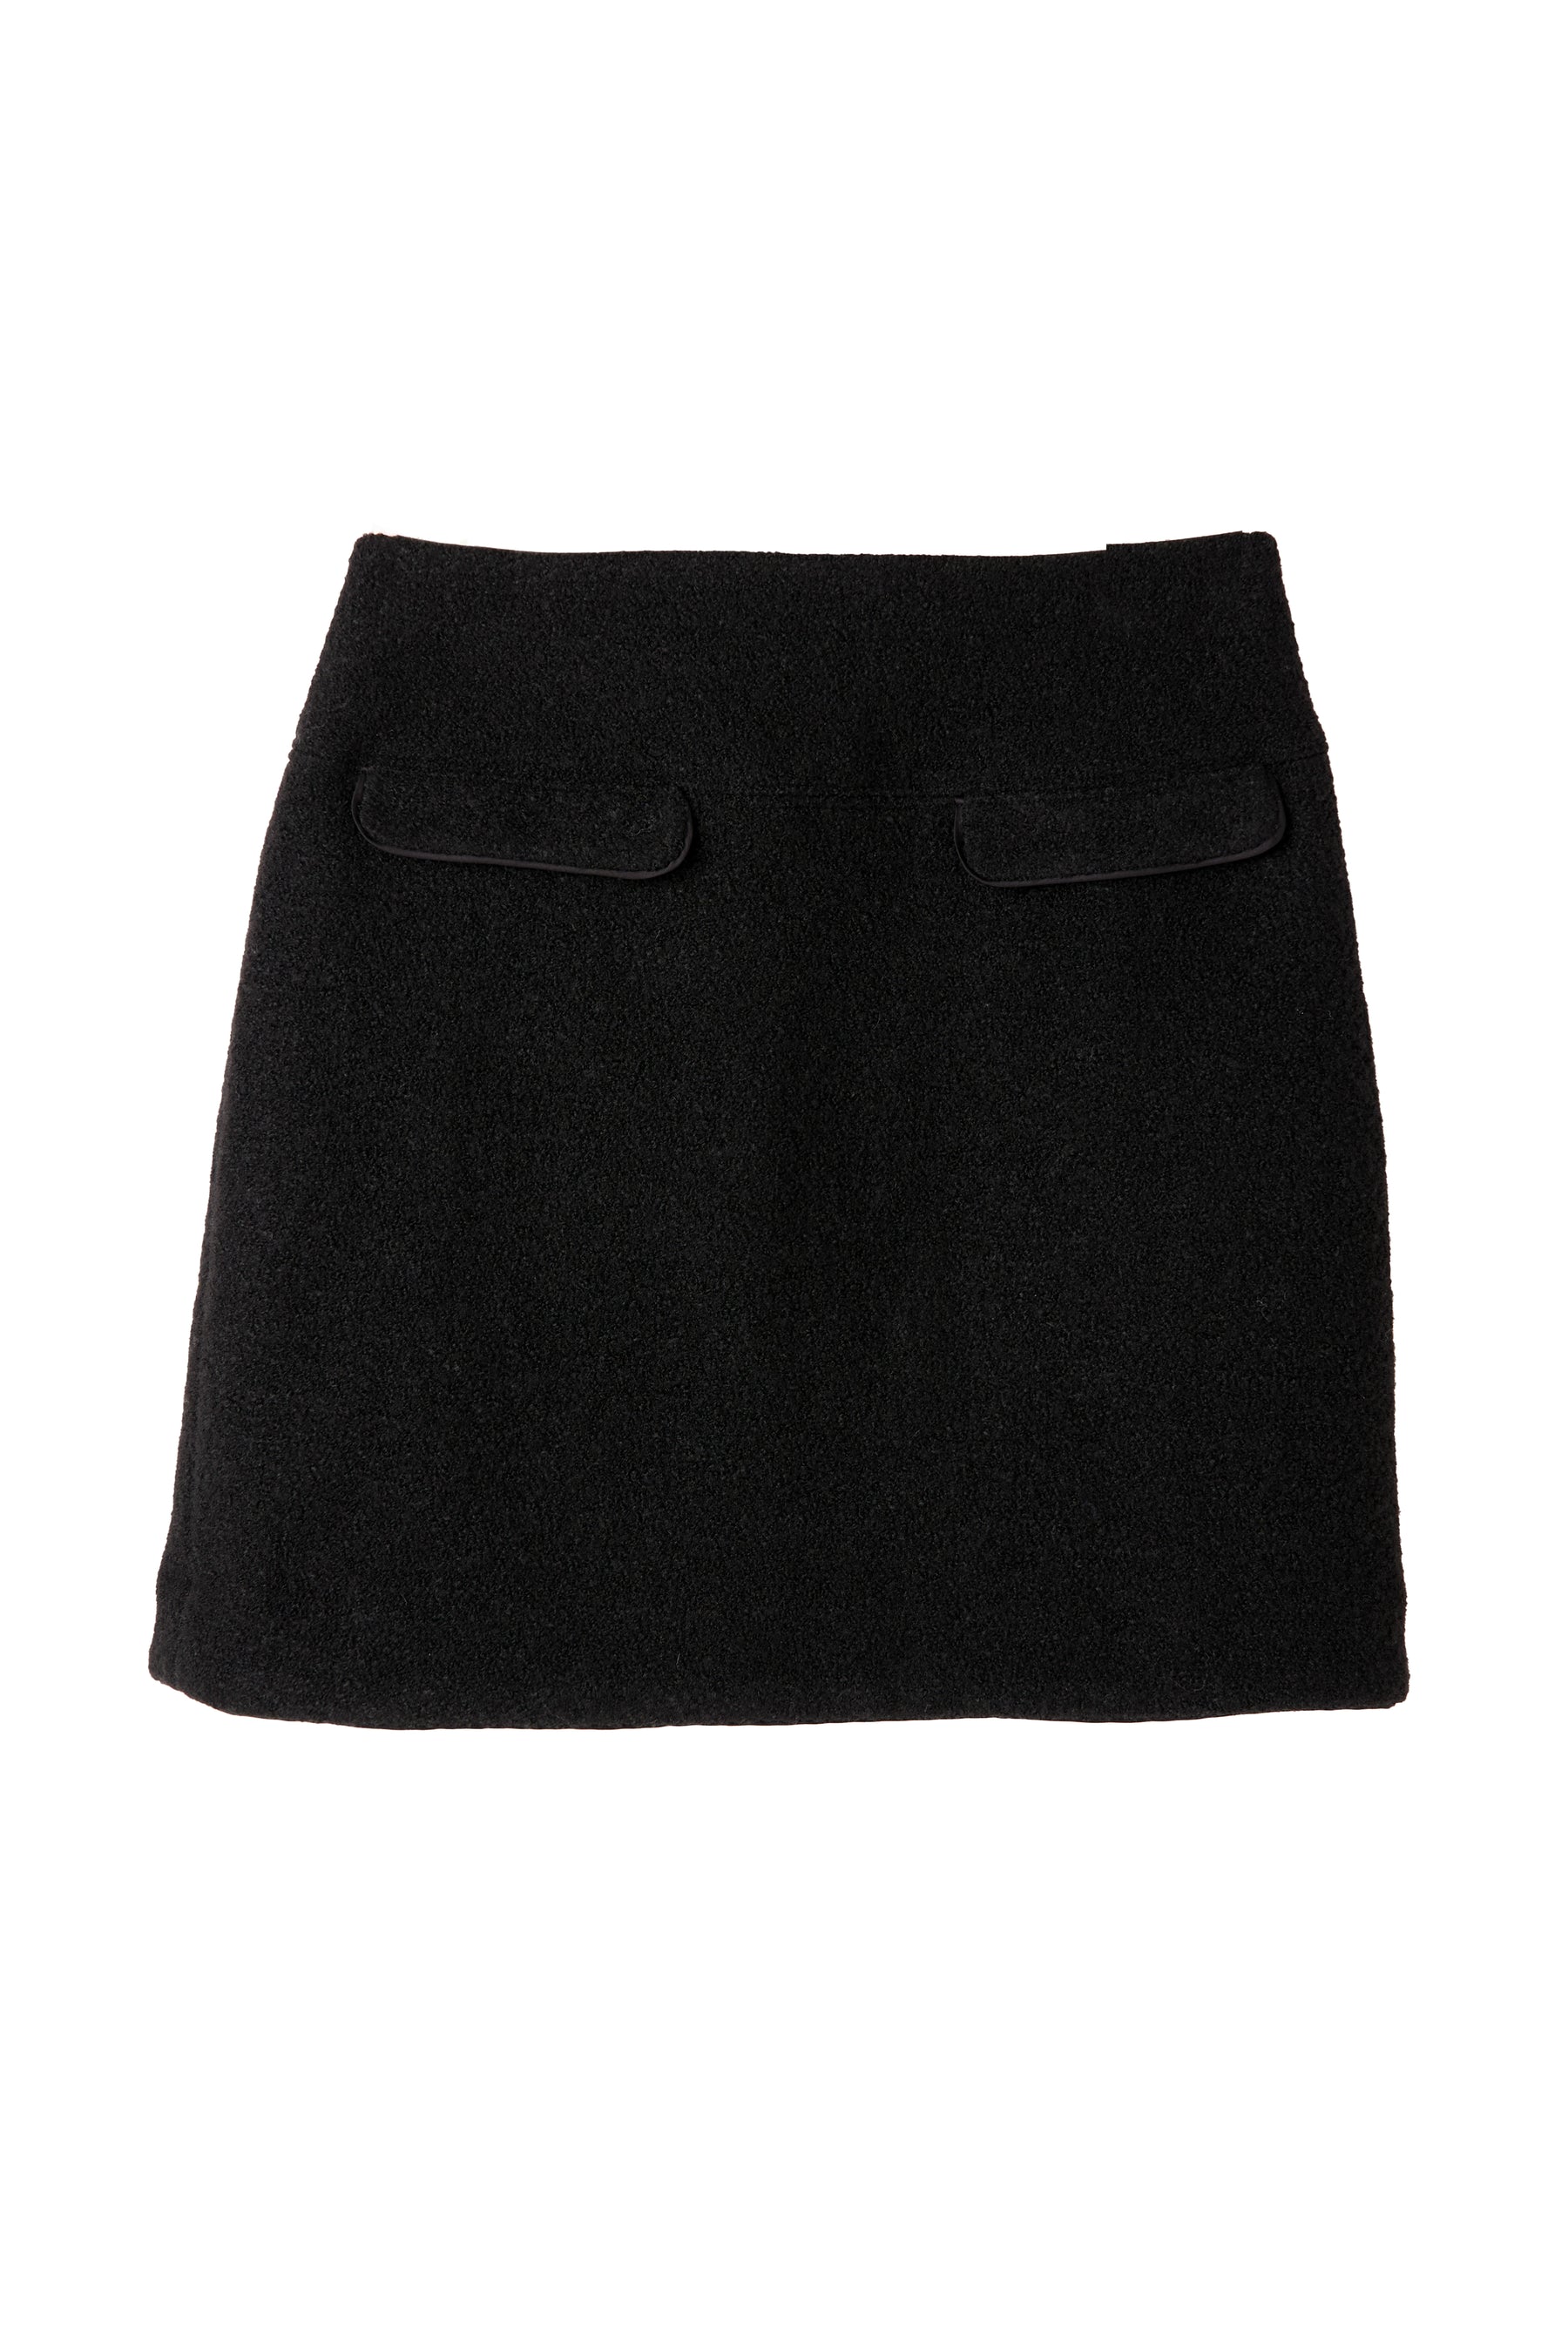 Hemingway Boucle Skirtシルエット台形 - ミニスカート